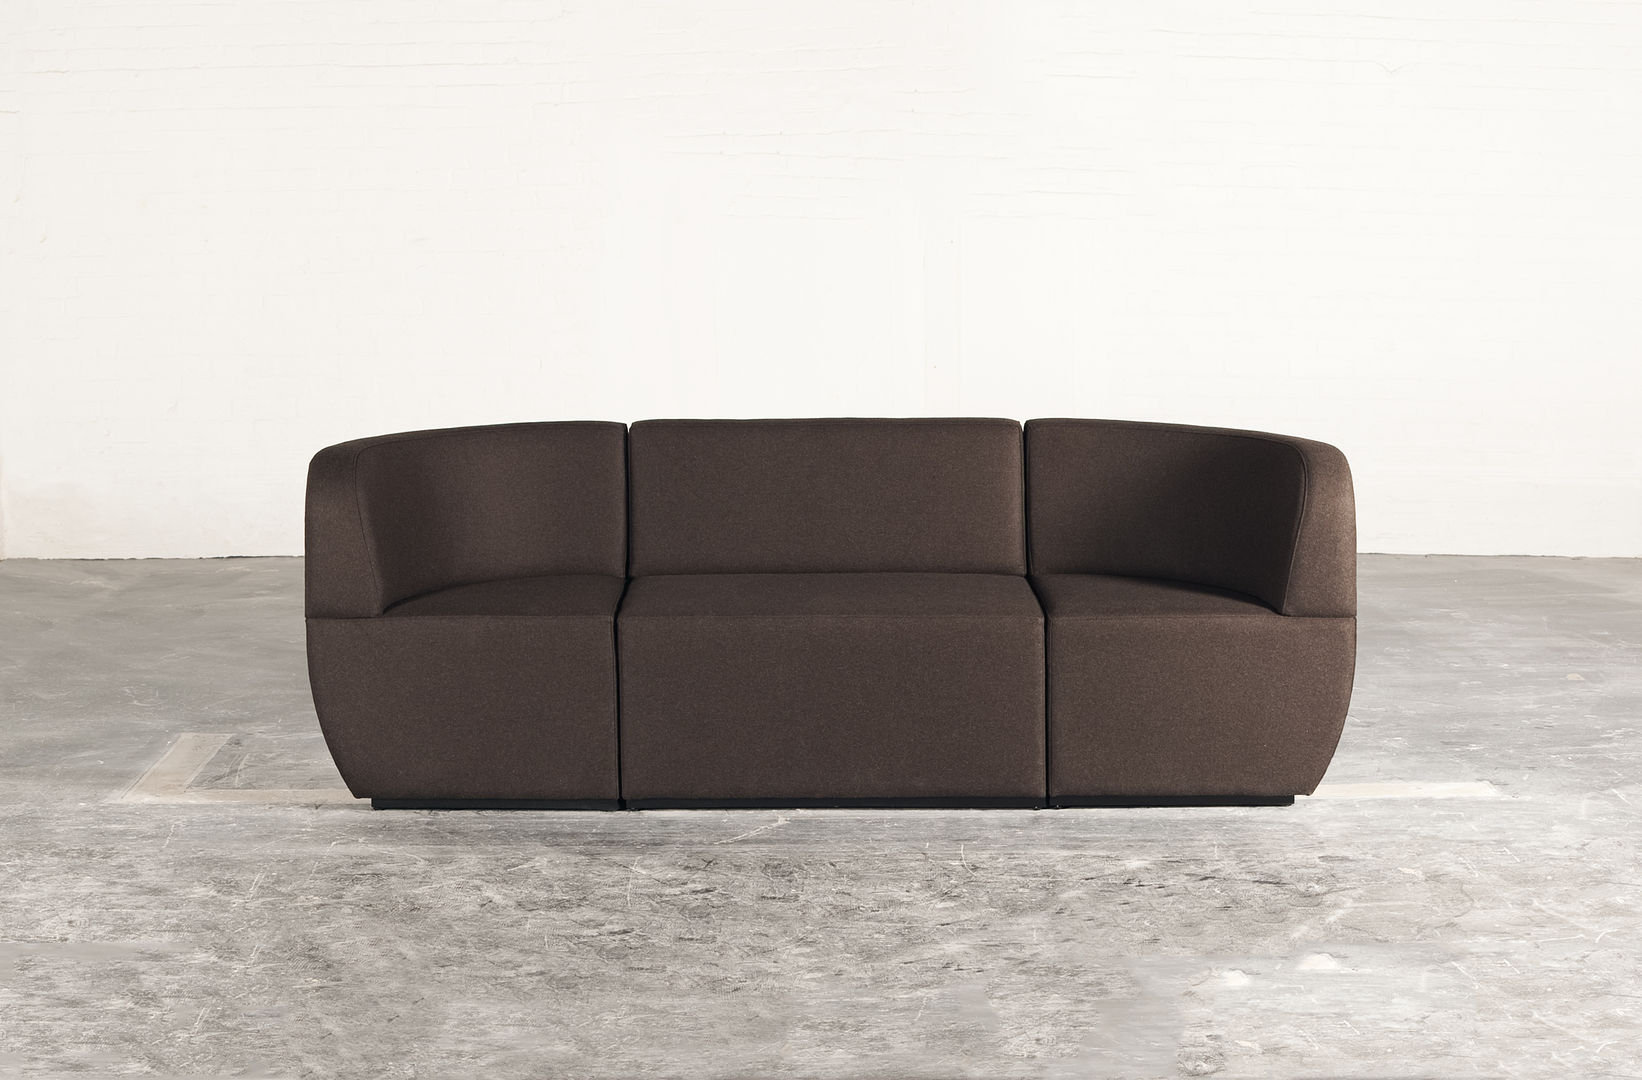 Cosmo - 3 seater couch Studio Lulo Livings modernos: Ideas, imágenes y decoración Sofás y sillones